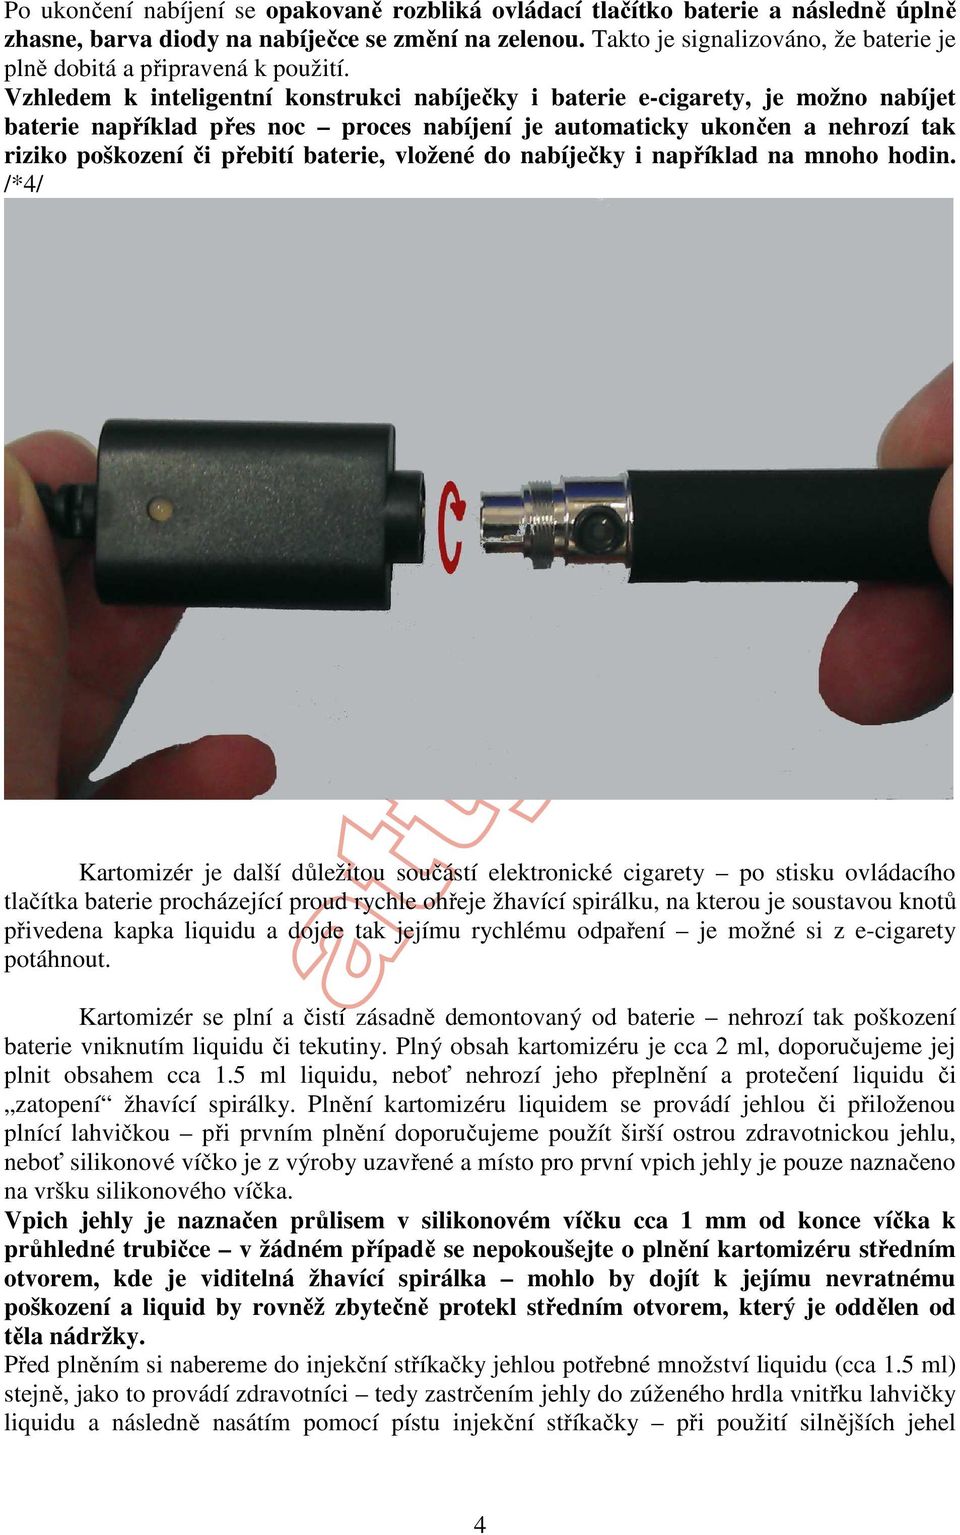 Český návod k elektronické cigaretě typu ego-w - PDF Stažení zdarma